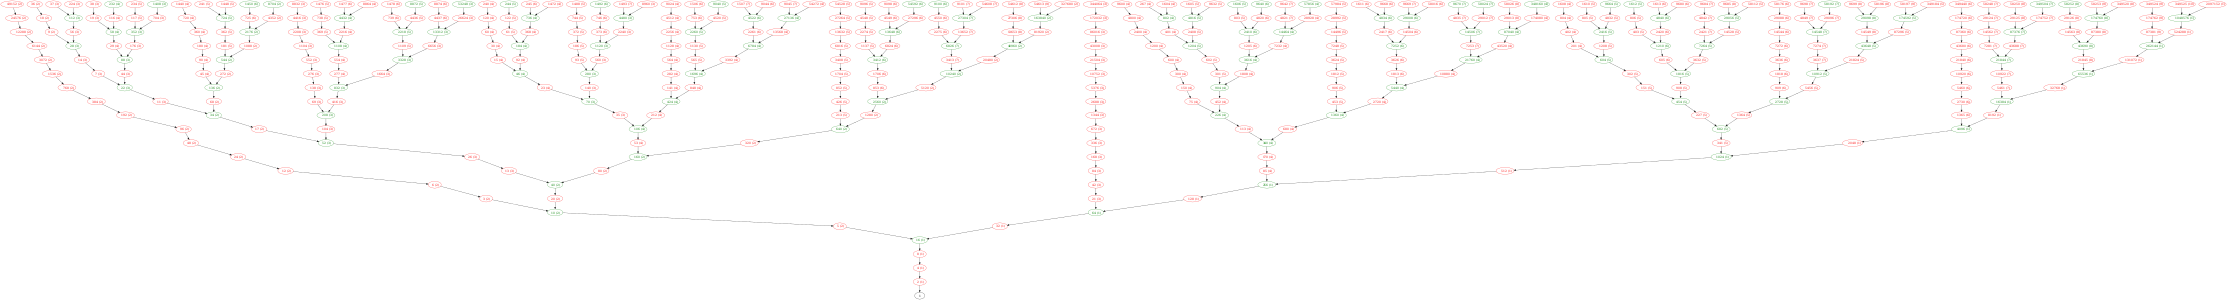 Els primers 21 nivells del graf de Collatz generats de manera ascendent. El graf inclou tots els números amb una longitud d'òrbita de 21 o menys